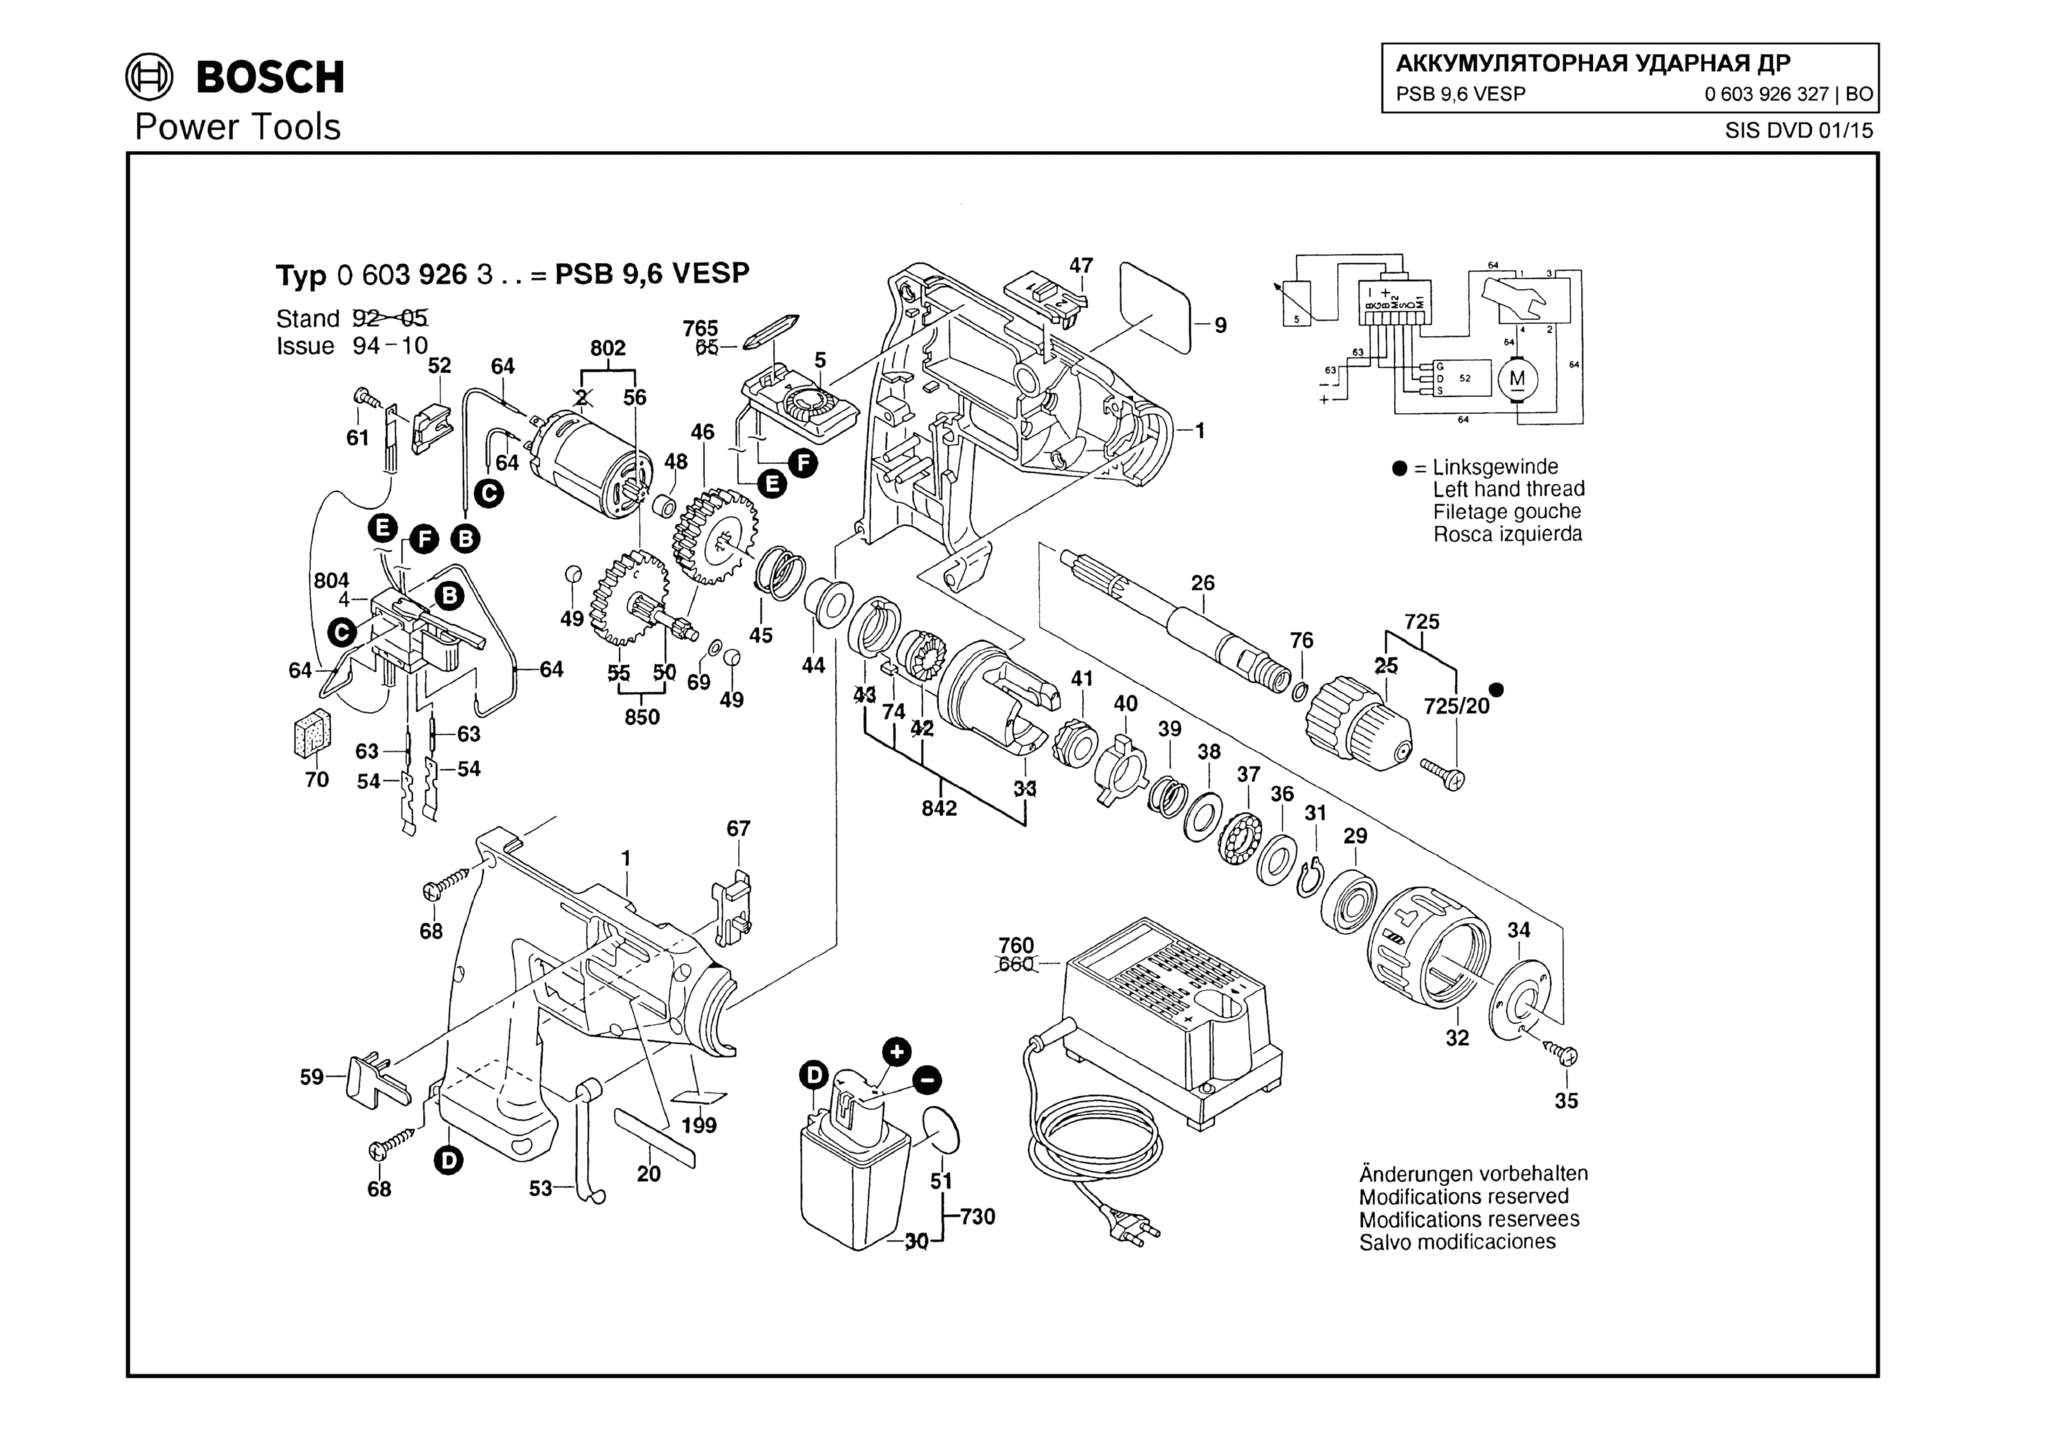 Запчасти, схема и деталировка Bosch PSB 9,6 VESP (ТИП 0603926327)